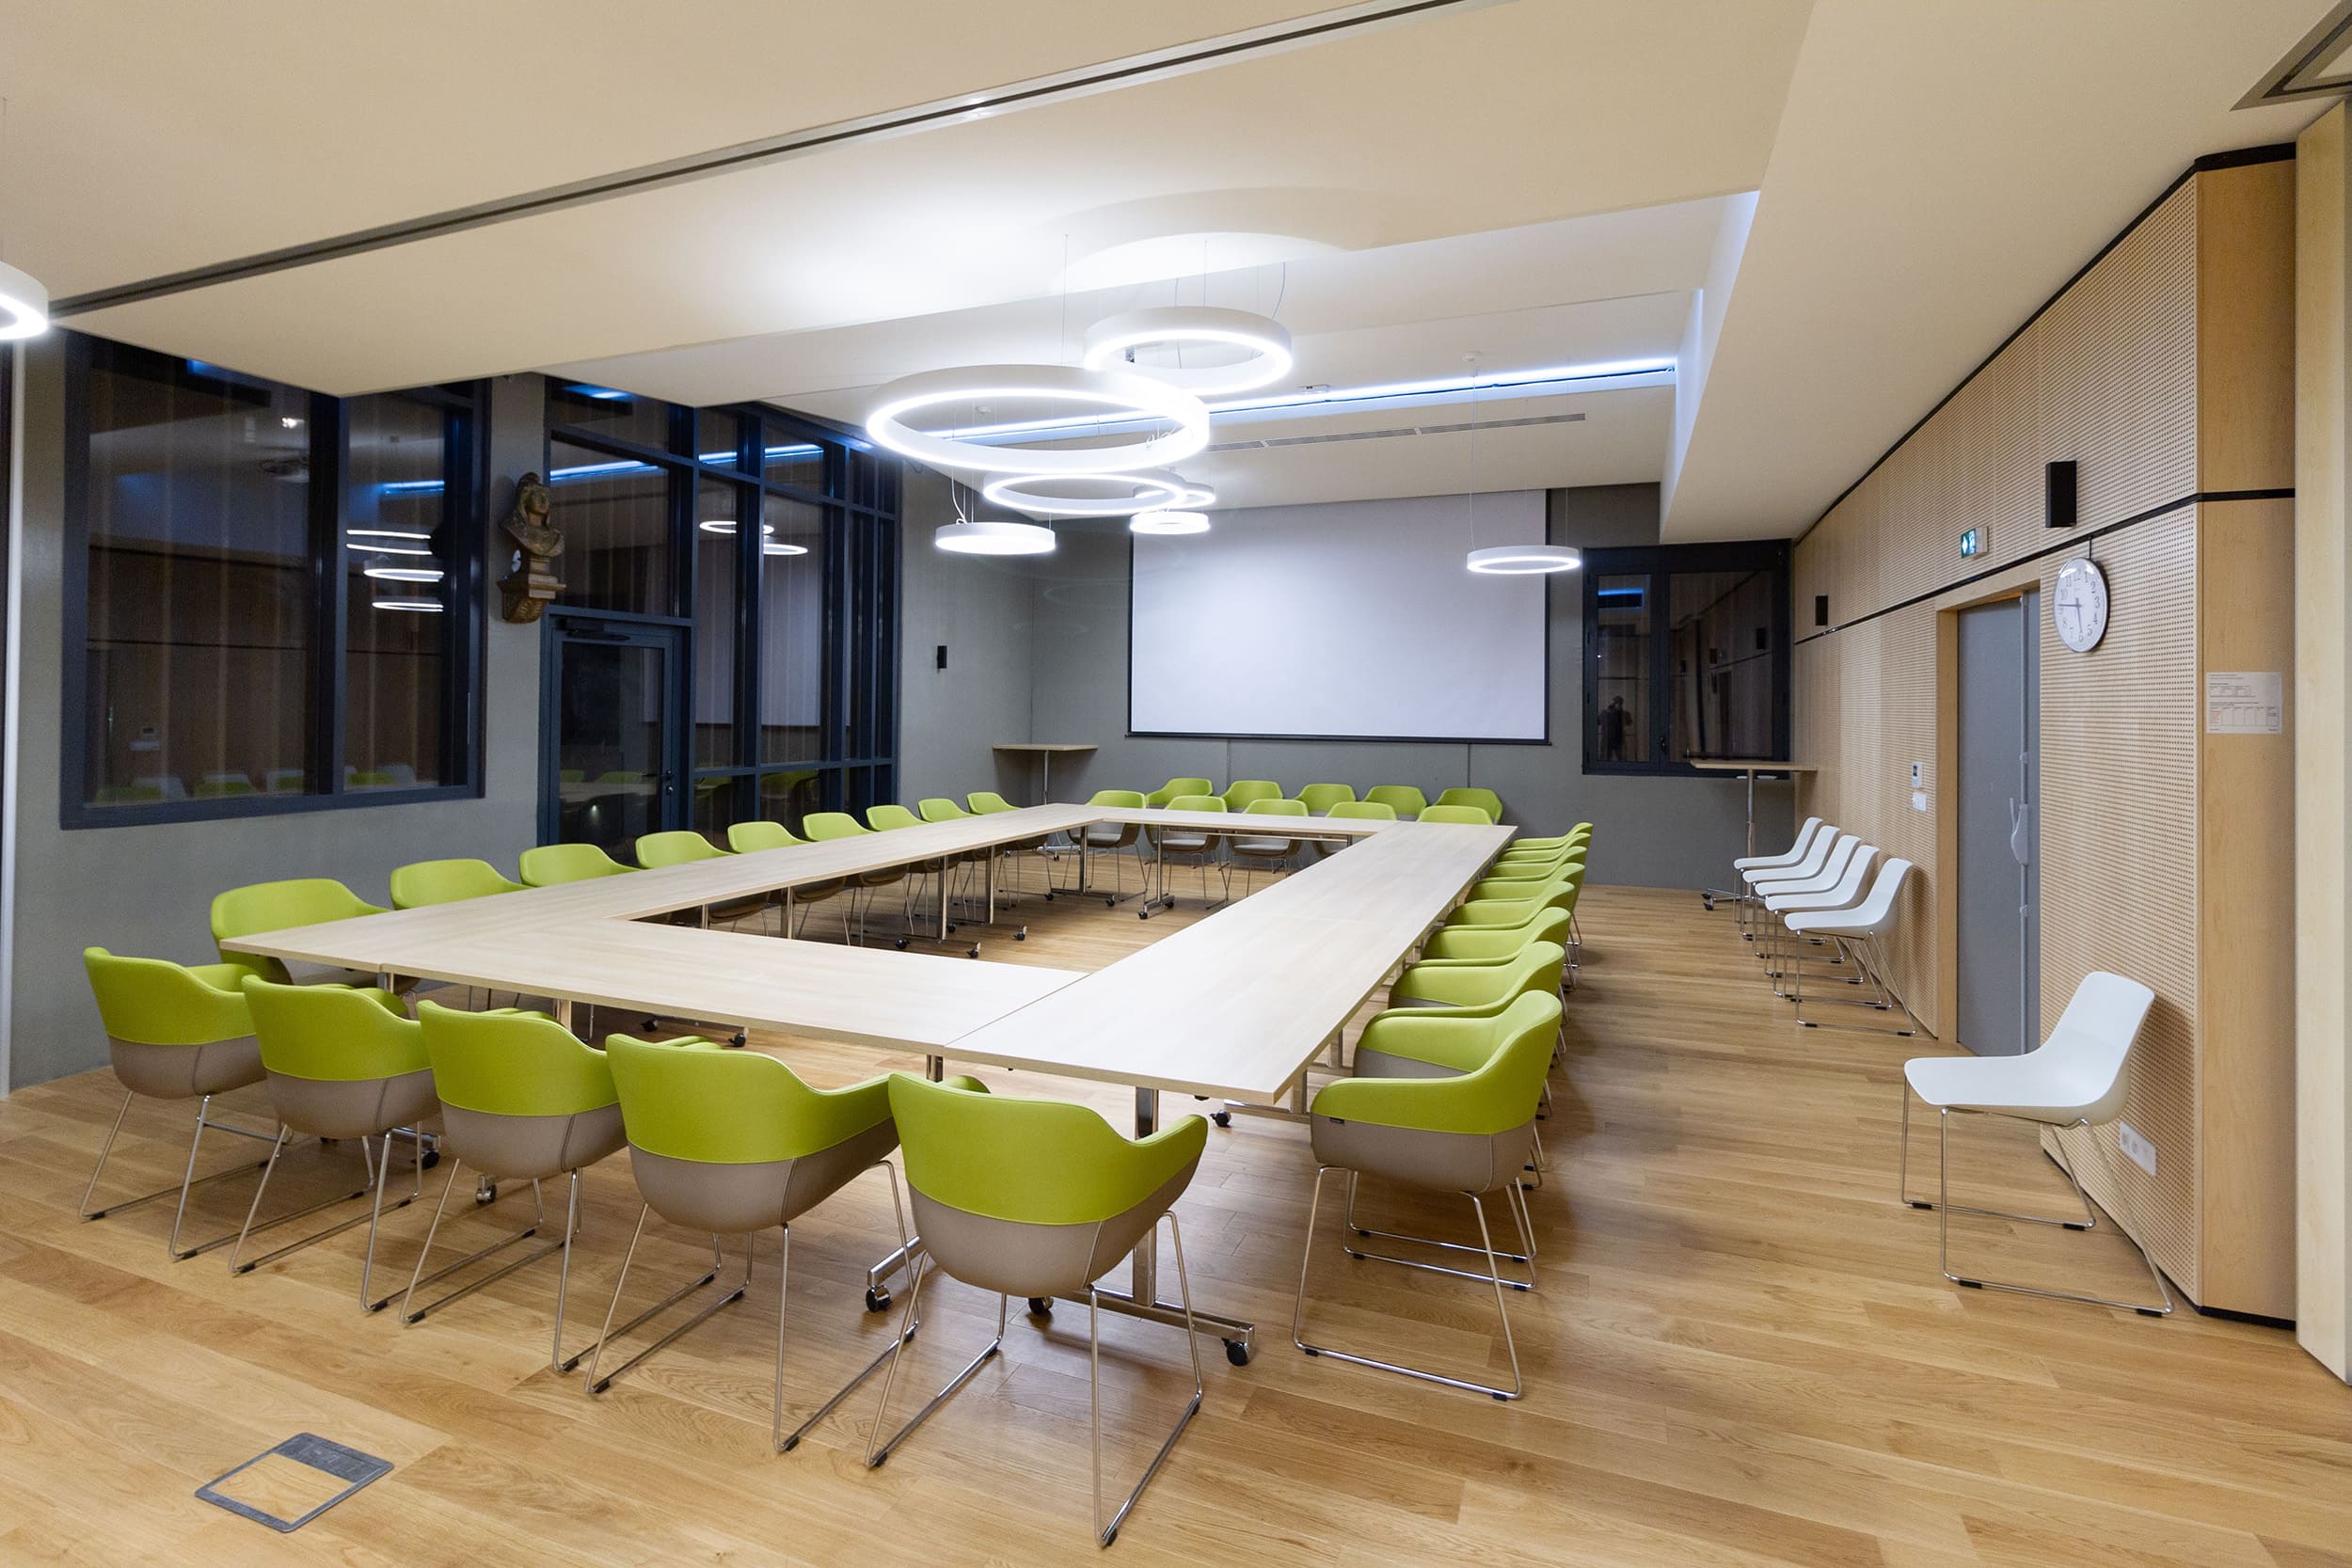 Salle de réunion pour une mairie en Savoie avec tables à plateau rabattable haut de gamme et fauteuils de conférence Design bicolore avec piétement traîneau